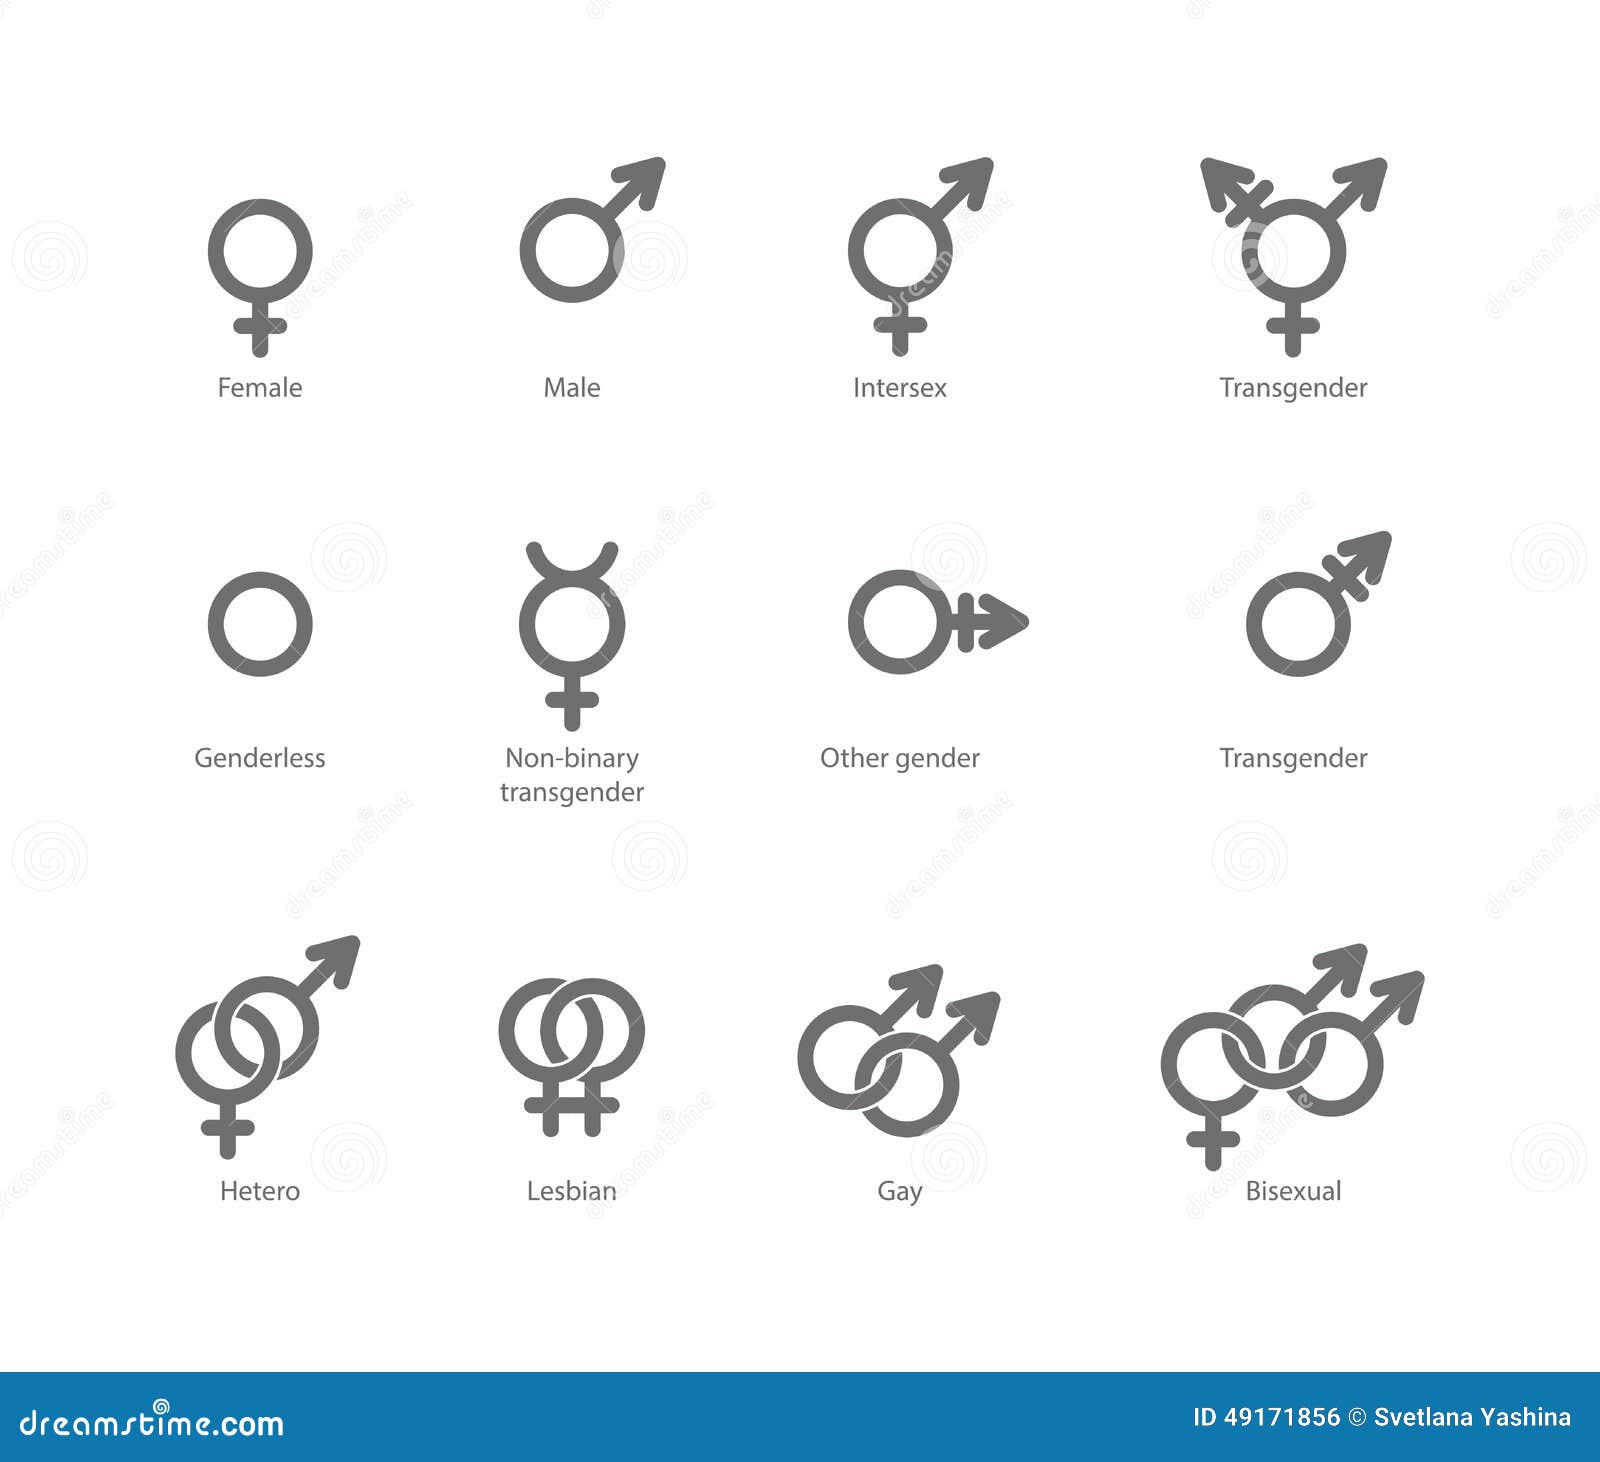 Transgender Symbols